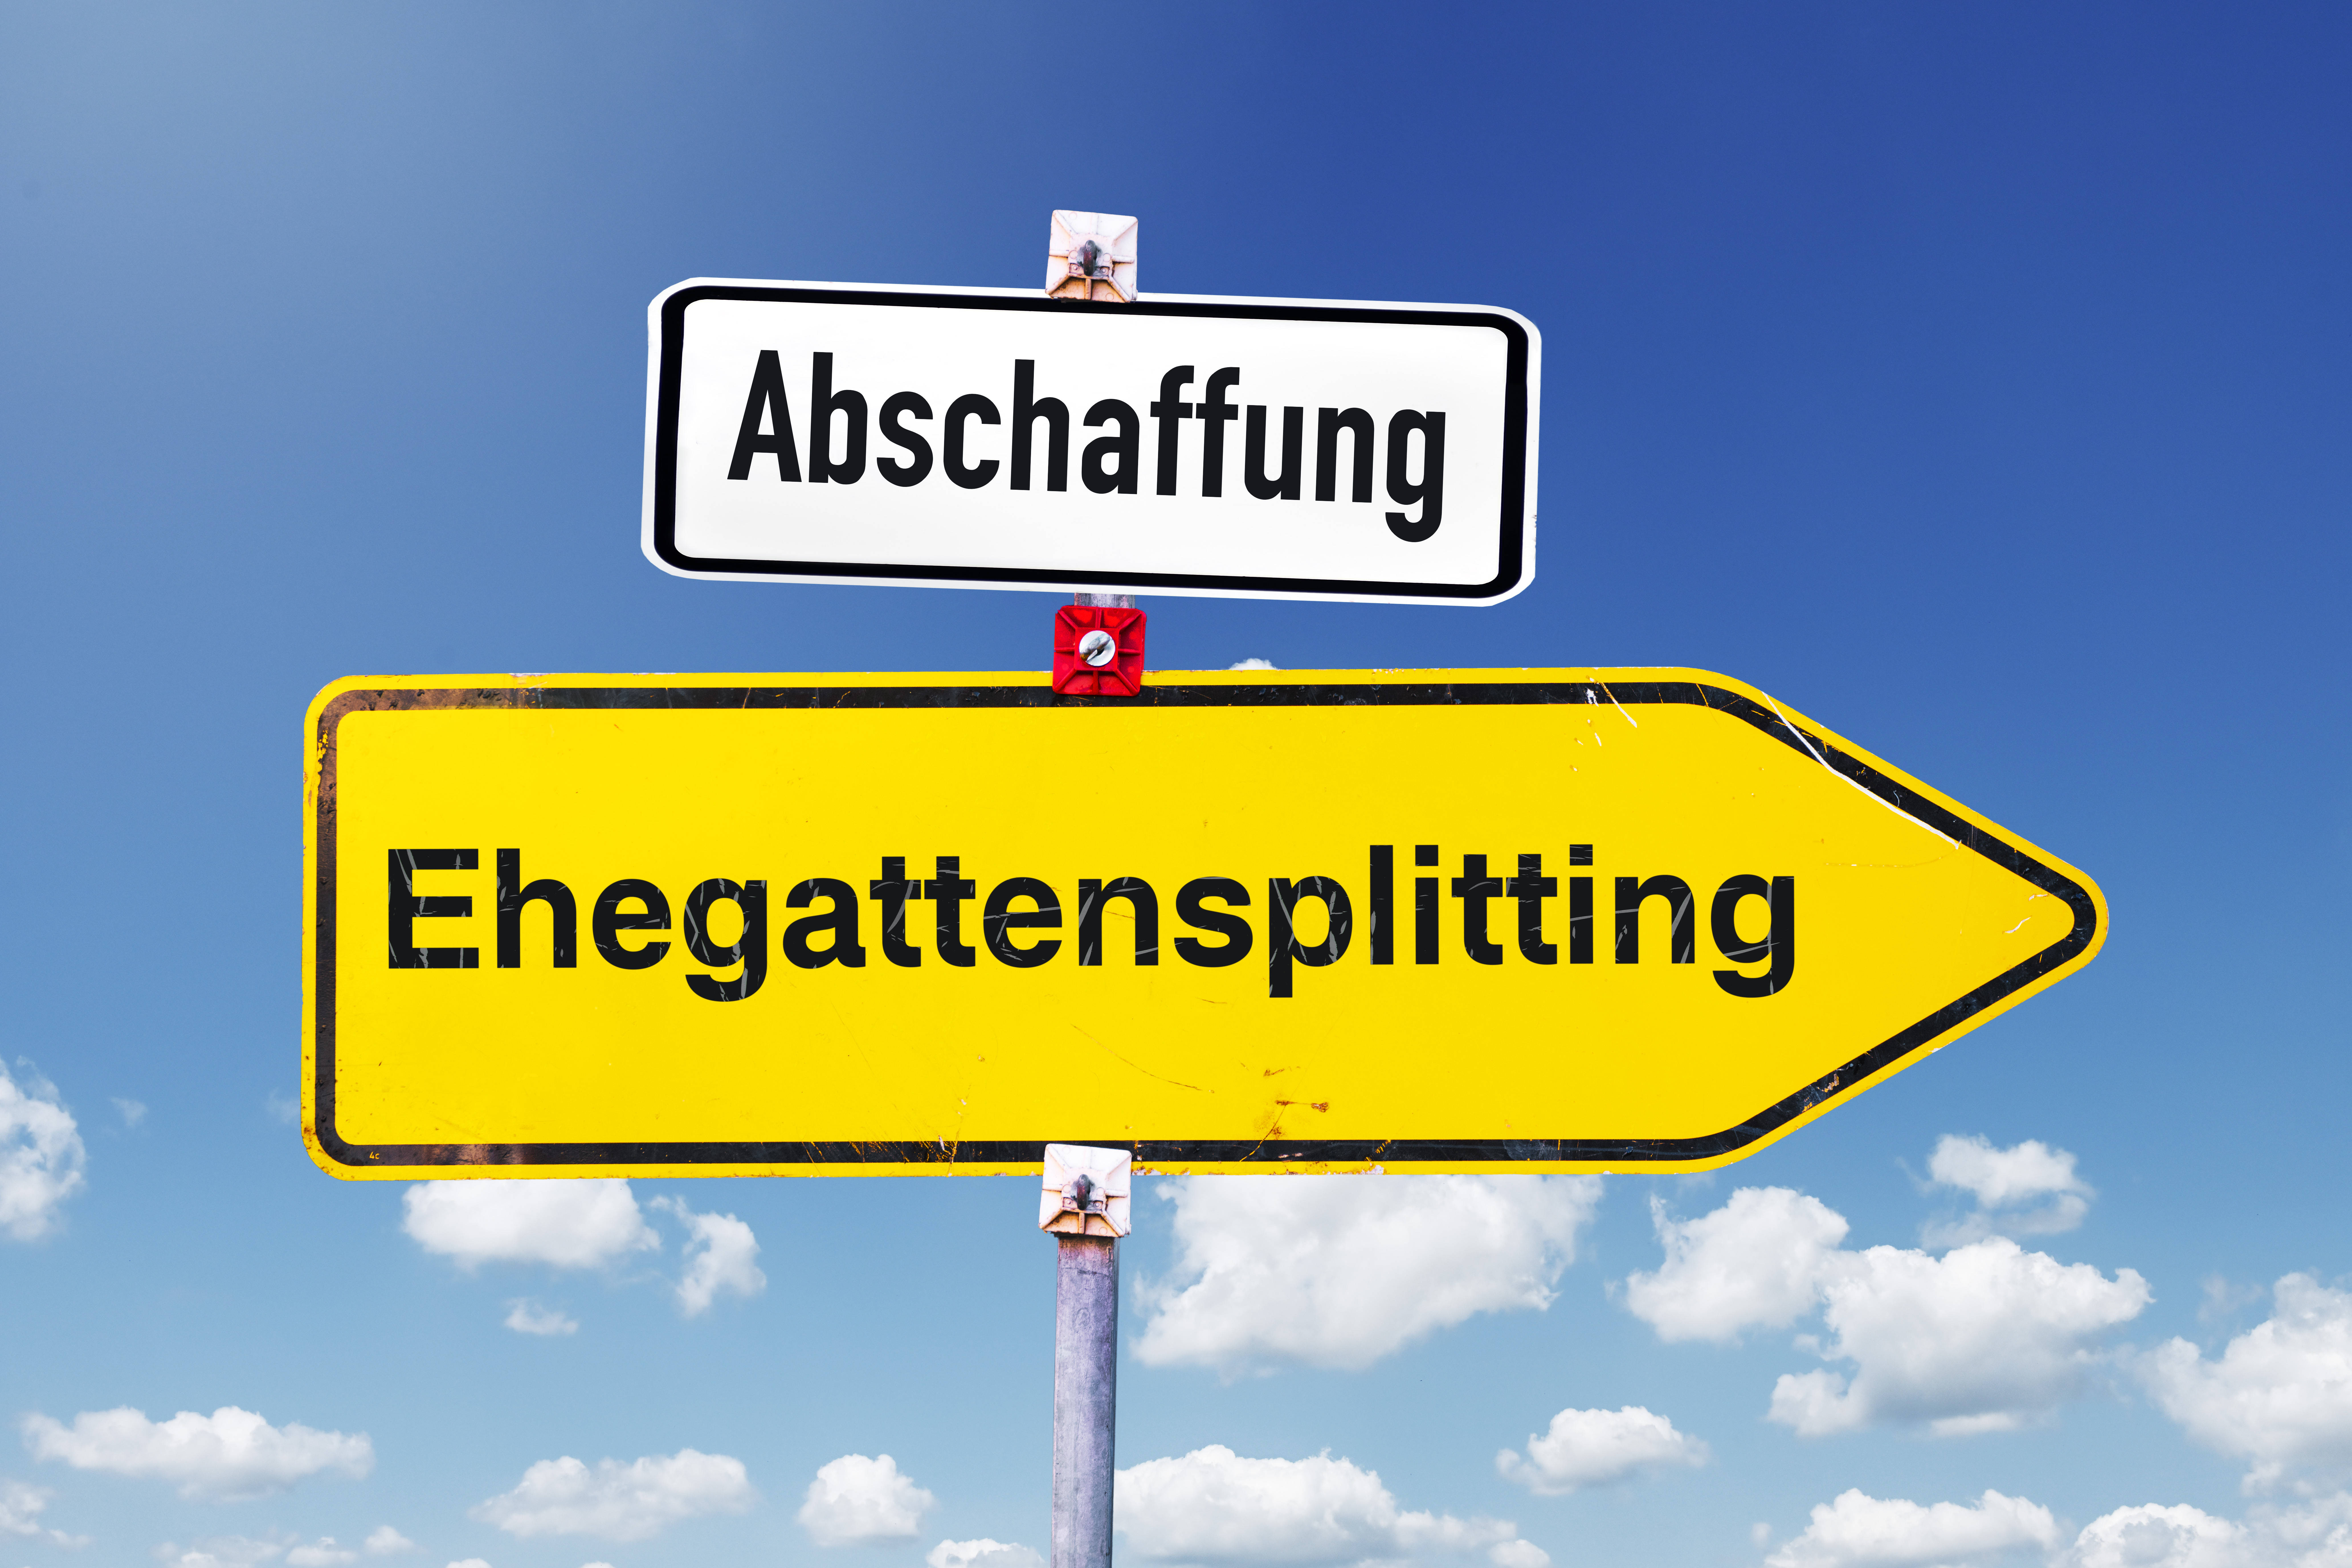 Das Ehegattensplitting sollte abgeschafft werden, findet Bettina Kohlrausch von der Hans-Böckler-Stiftung.